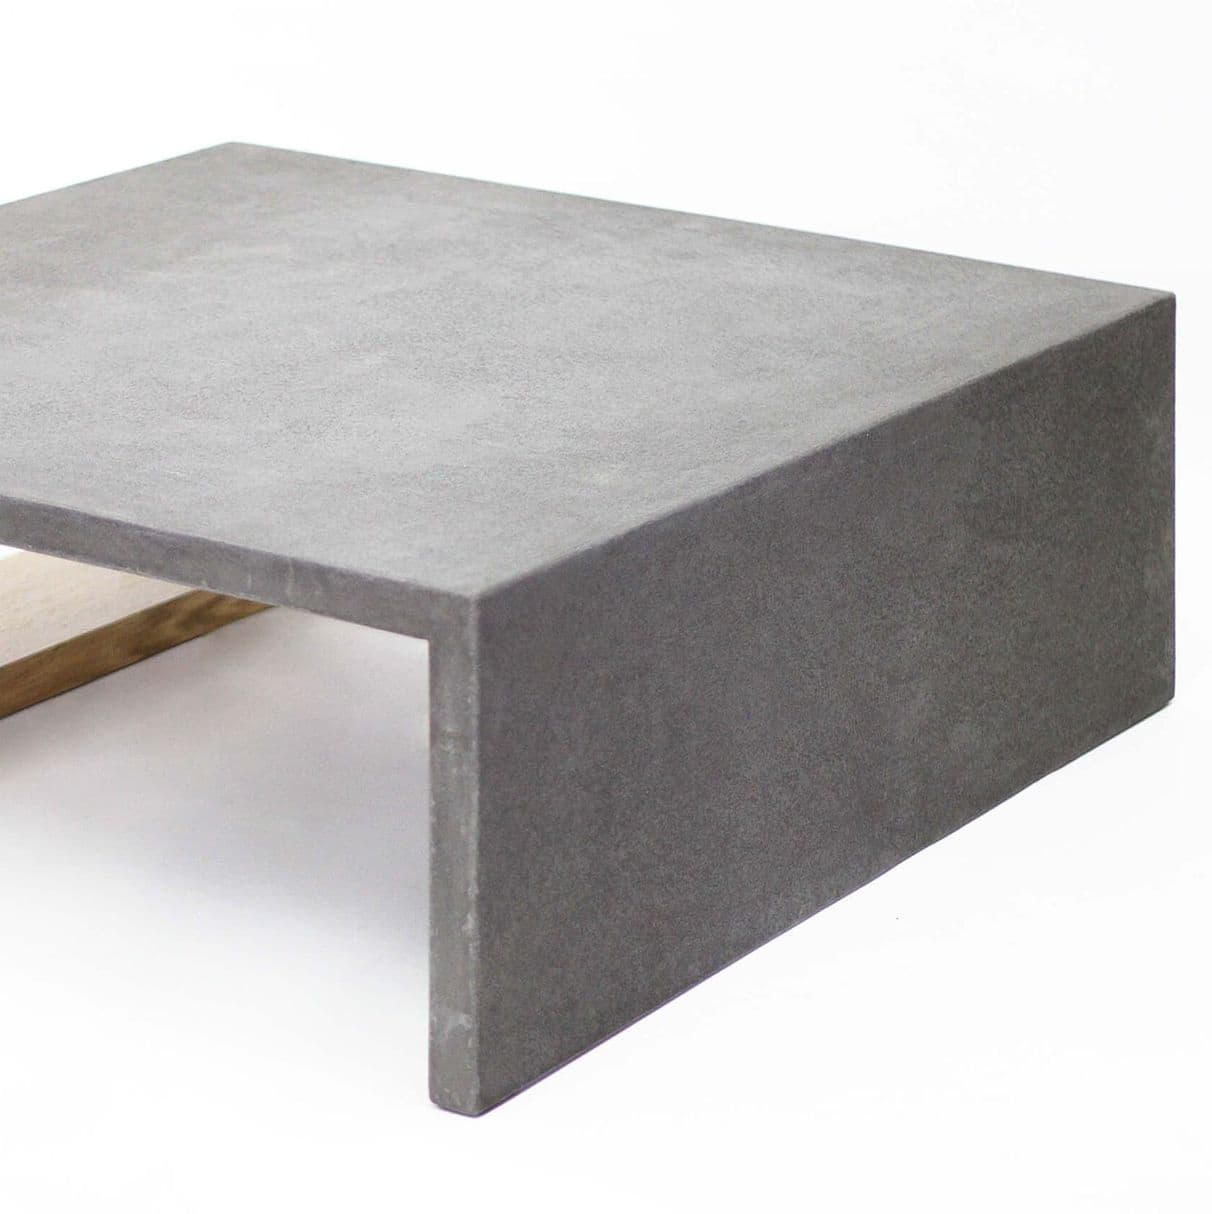 Фото бетонной столешницы столика Frame